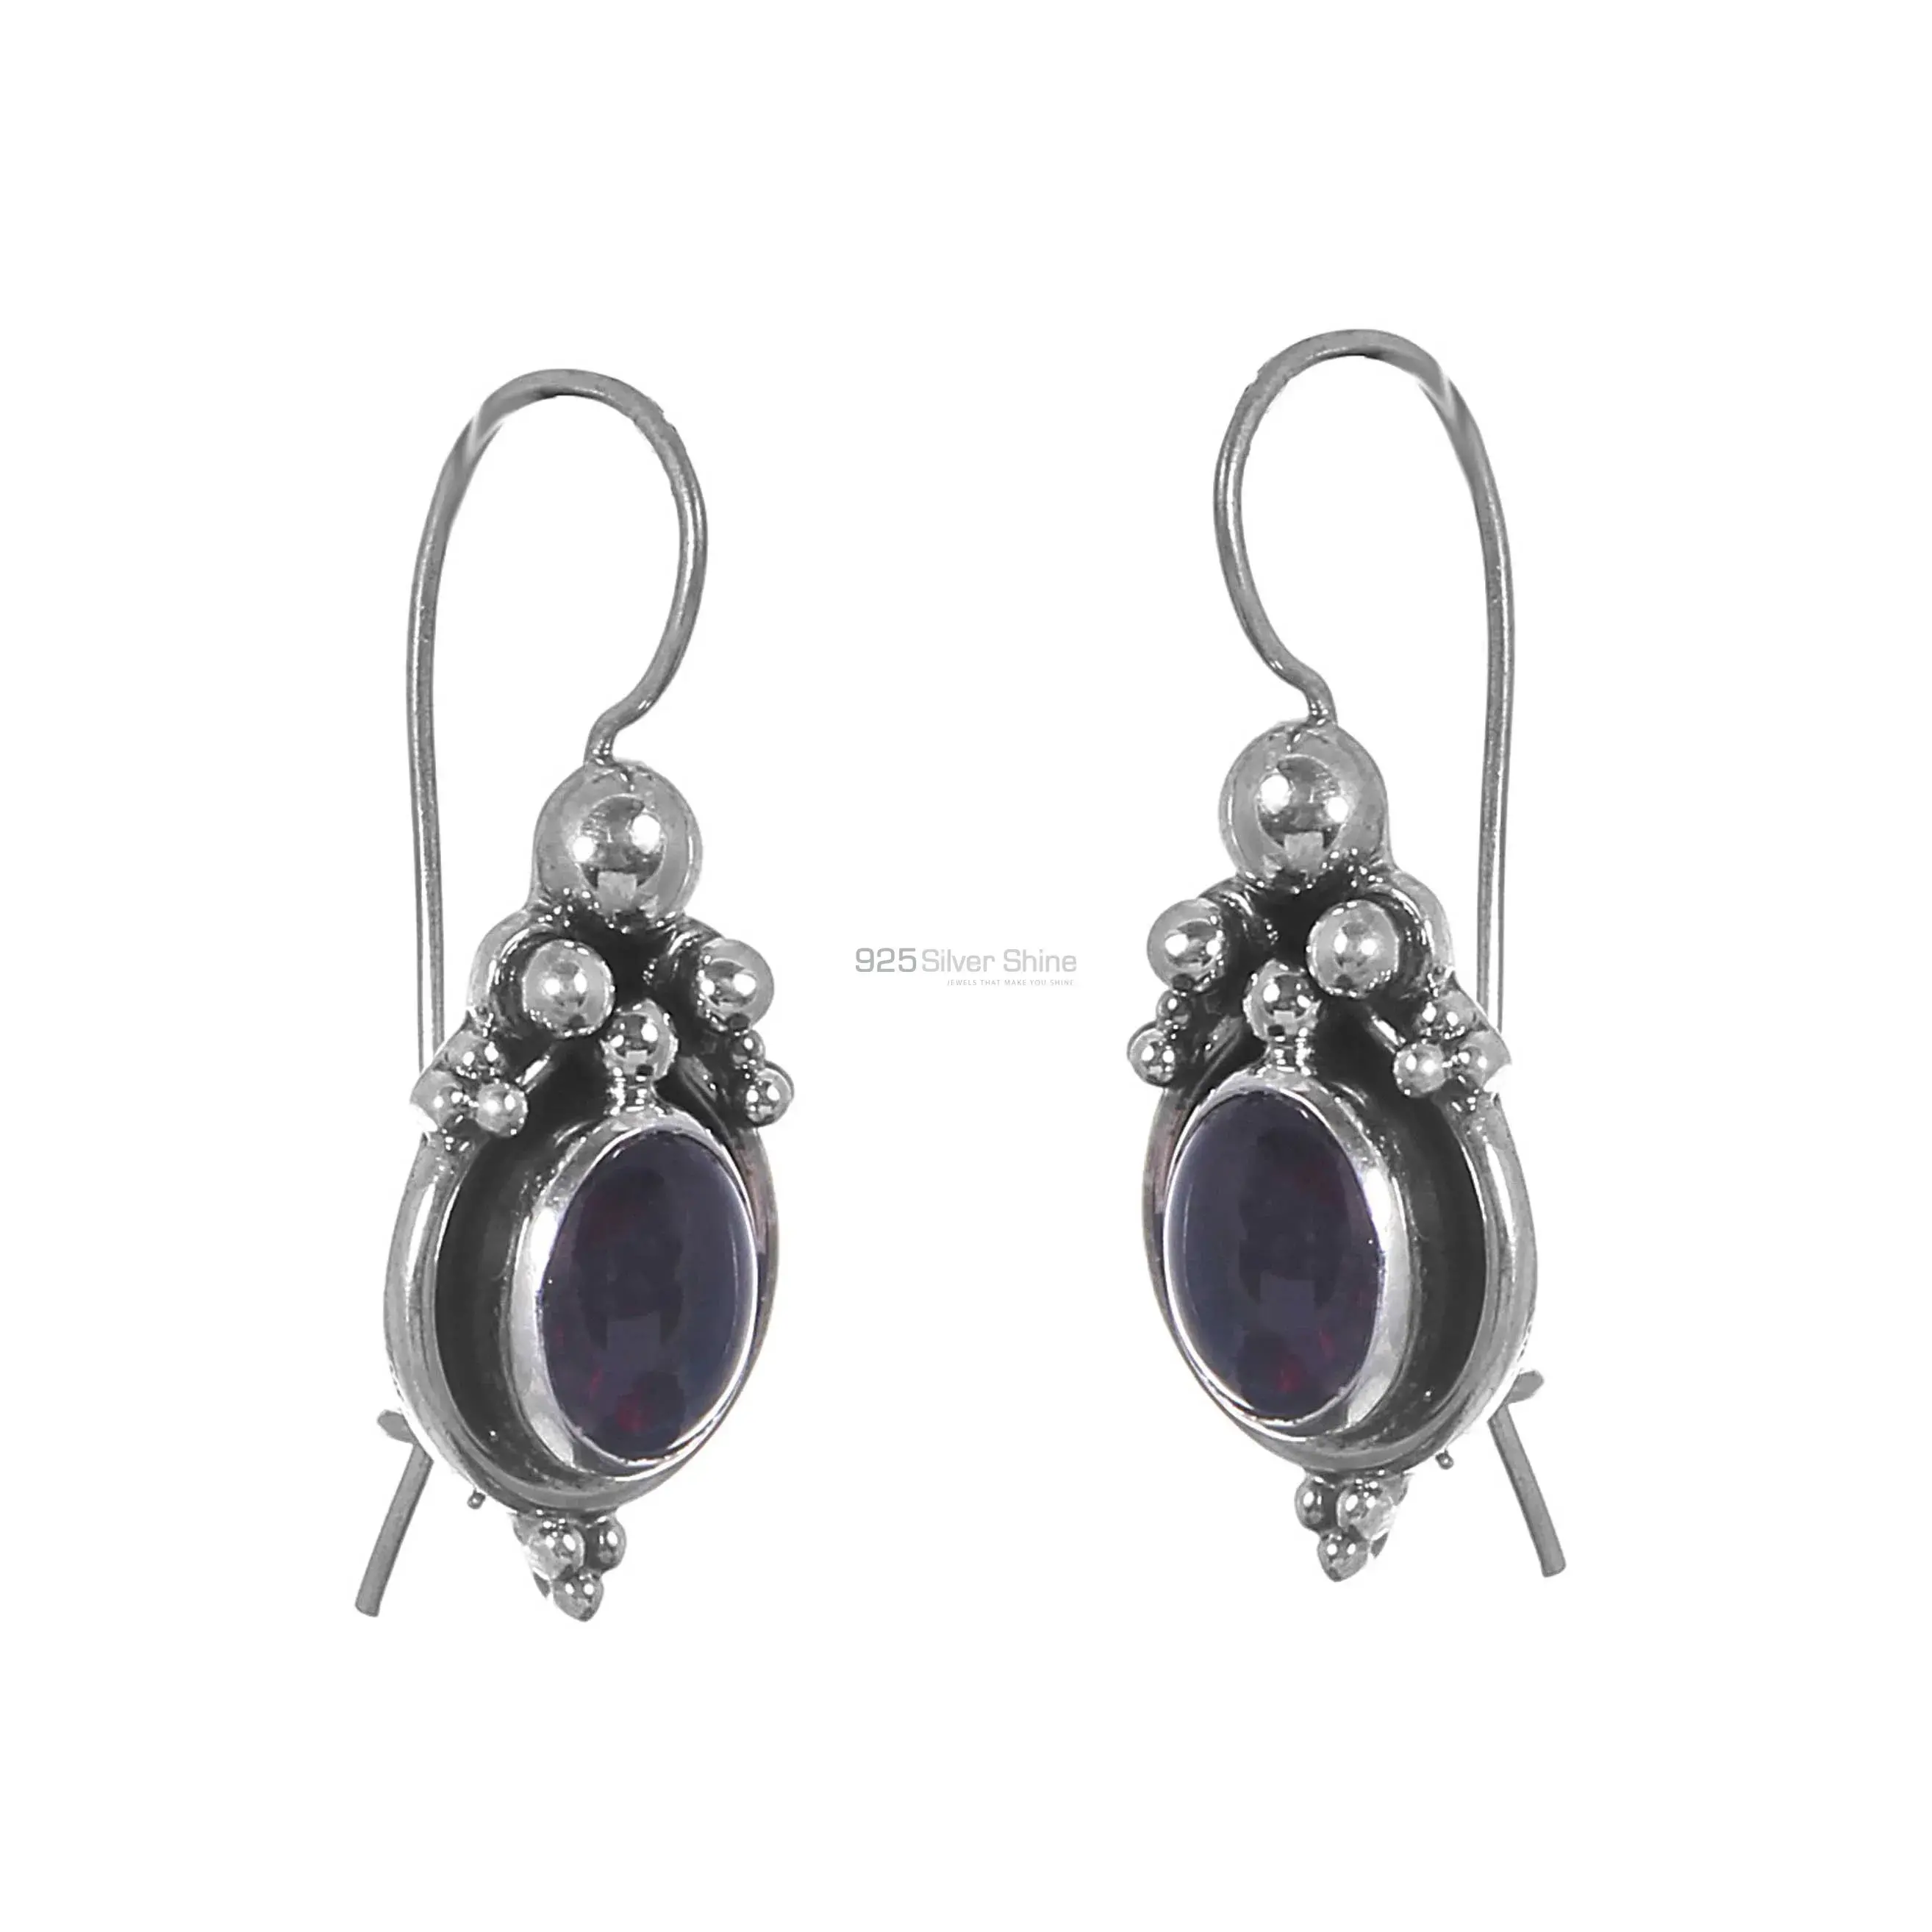 Handmade Solid Silver Earrings In Garnet Gemstone Jewelry 925SE204_0